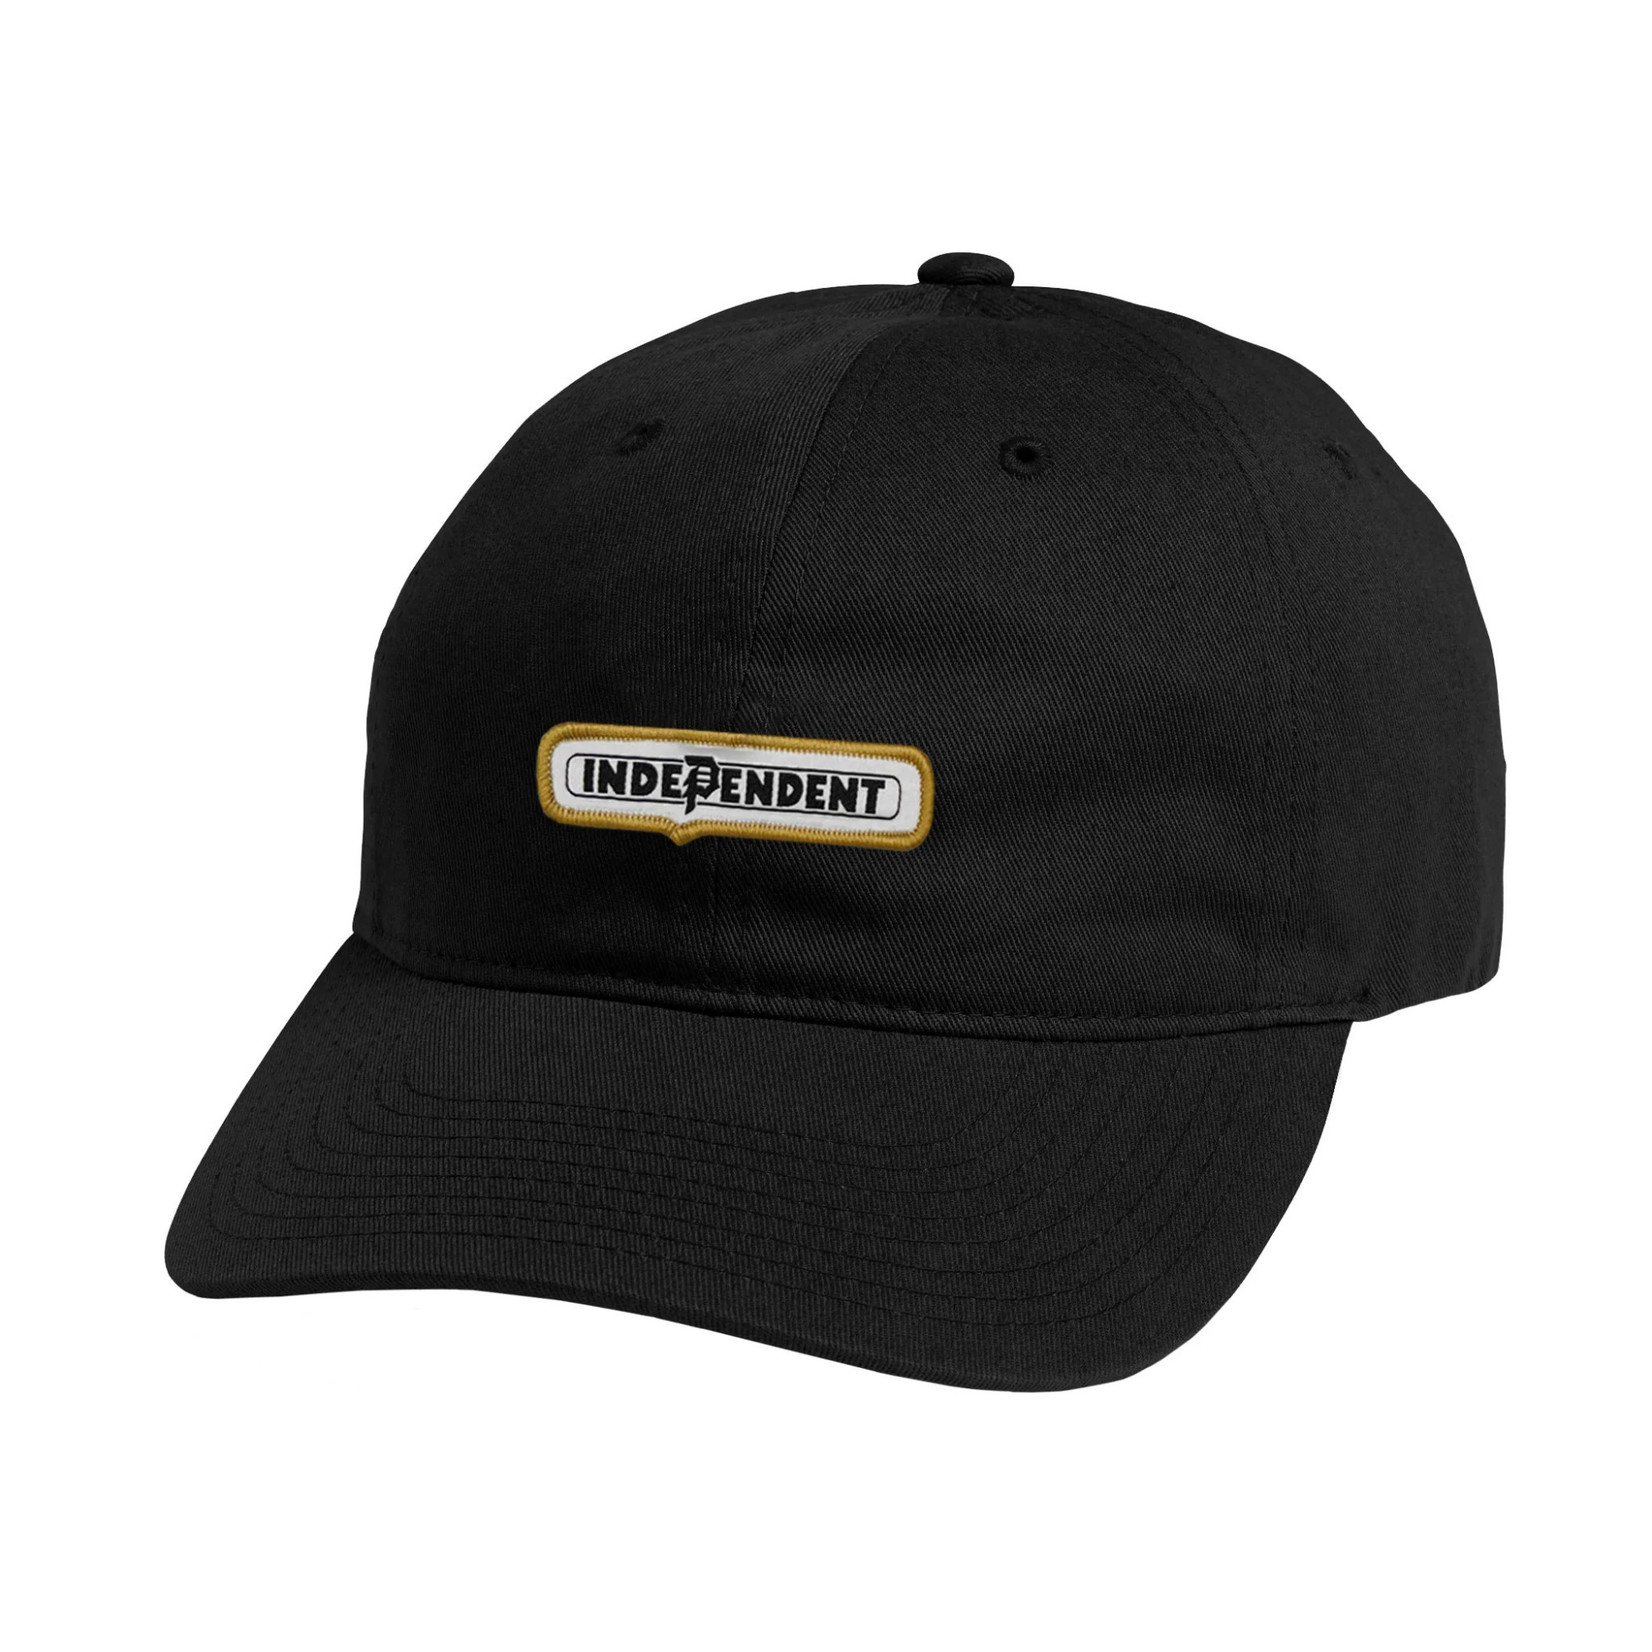 Primitive Primitive X Independent Bar Strapback Hat - Black